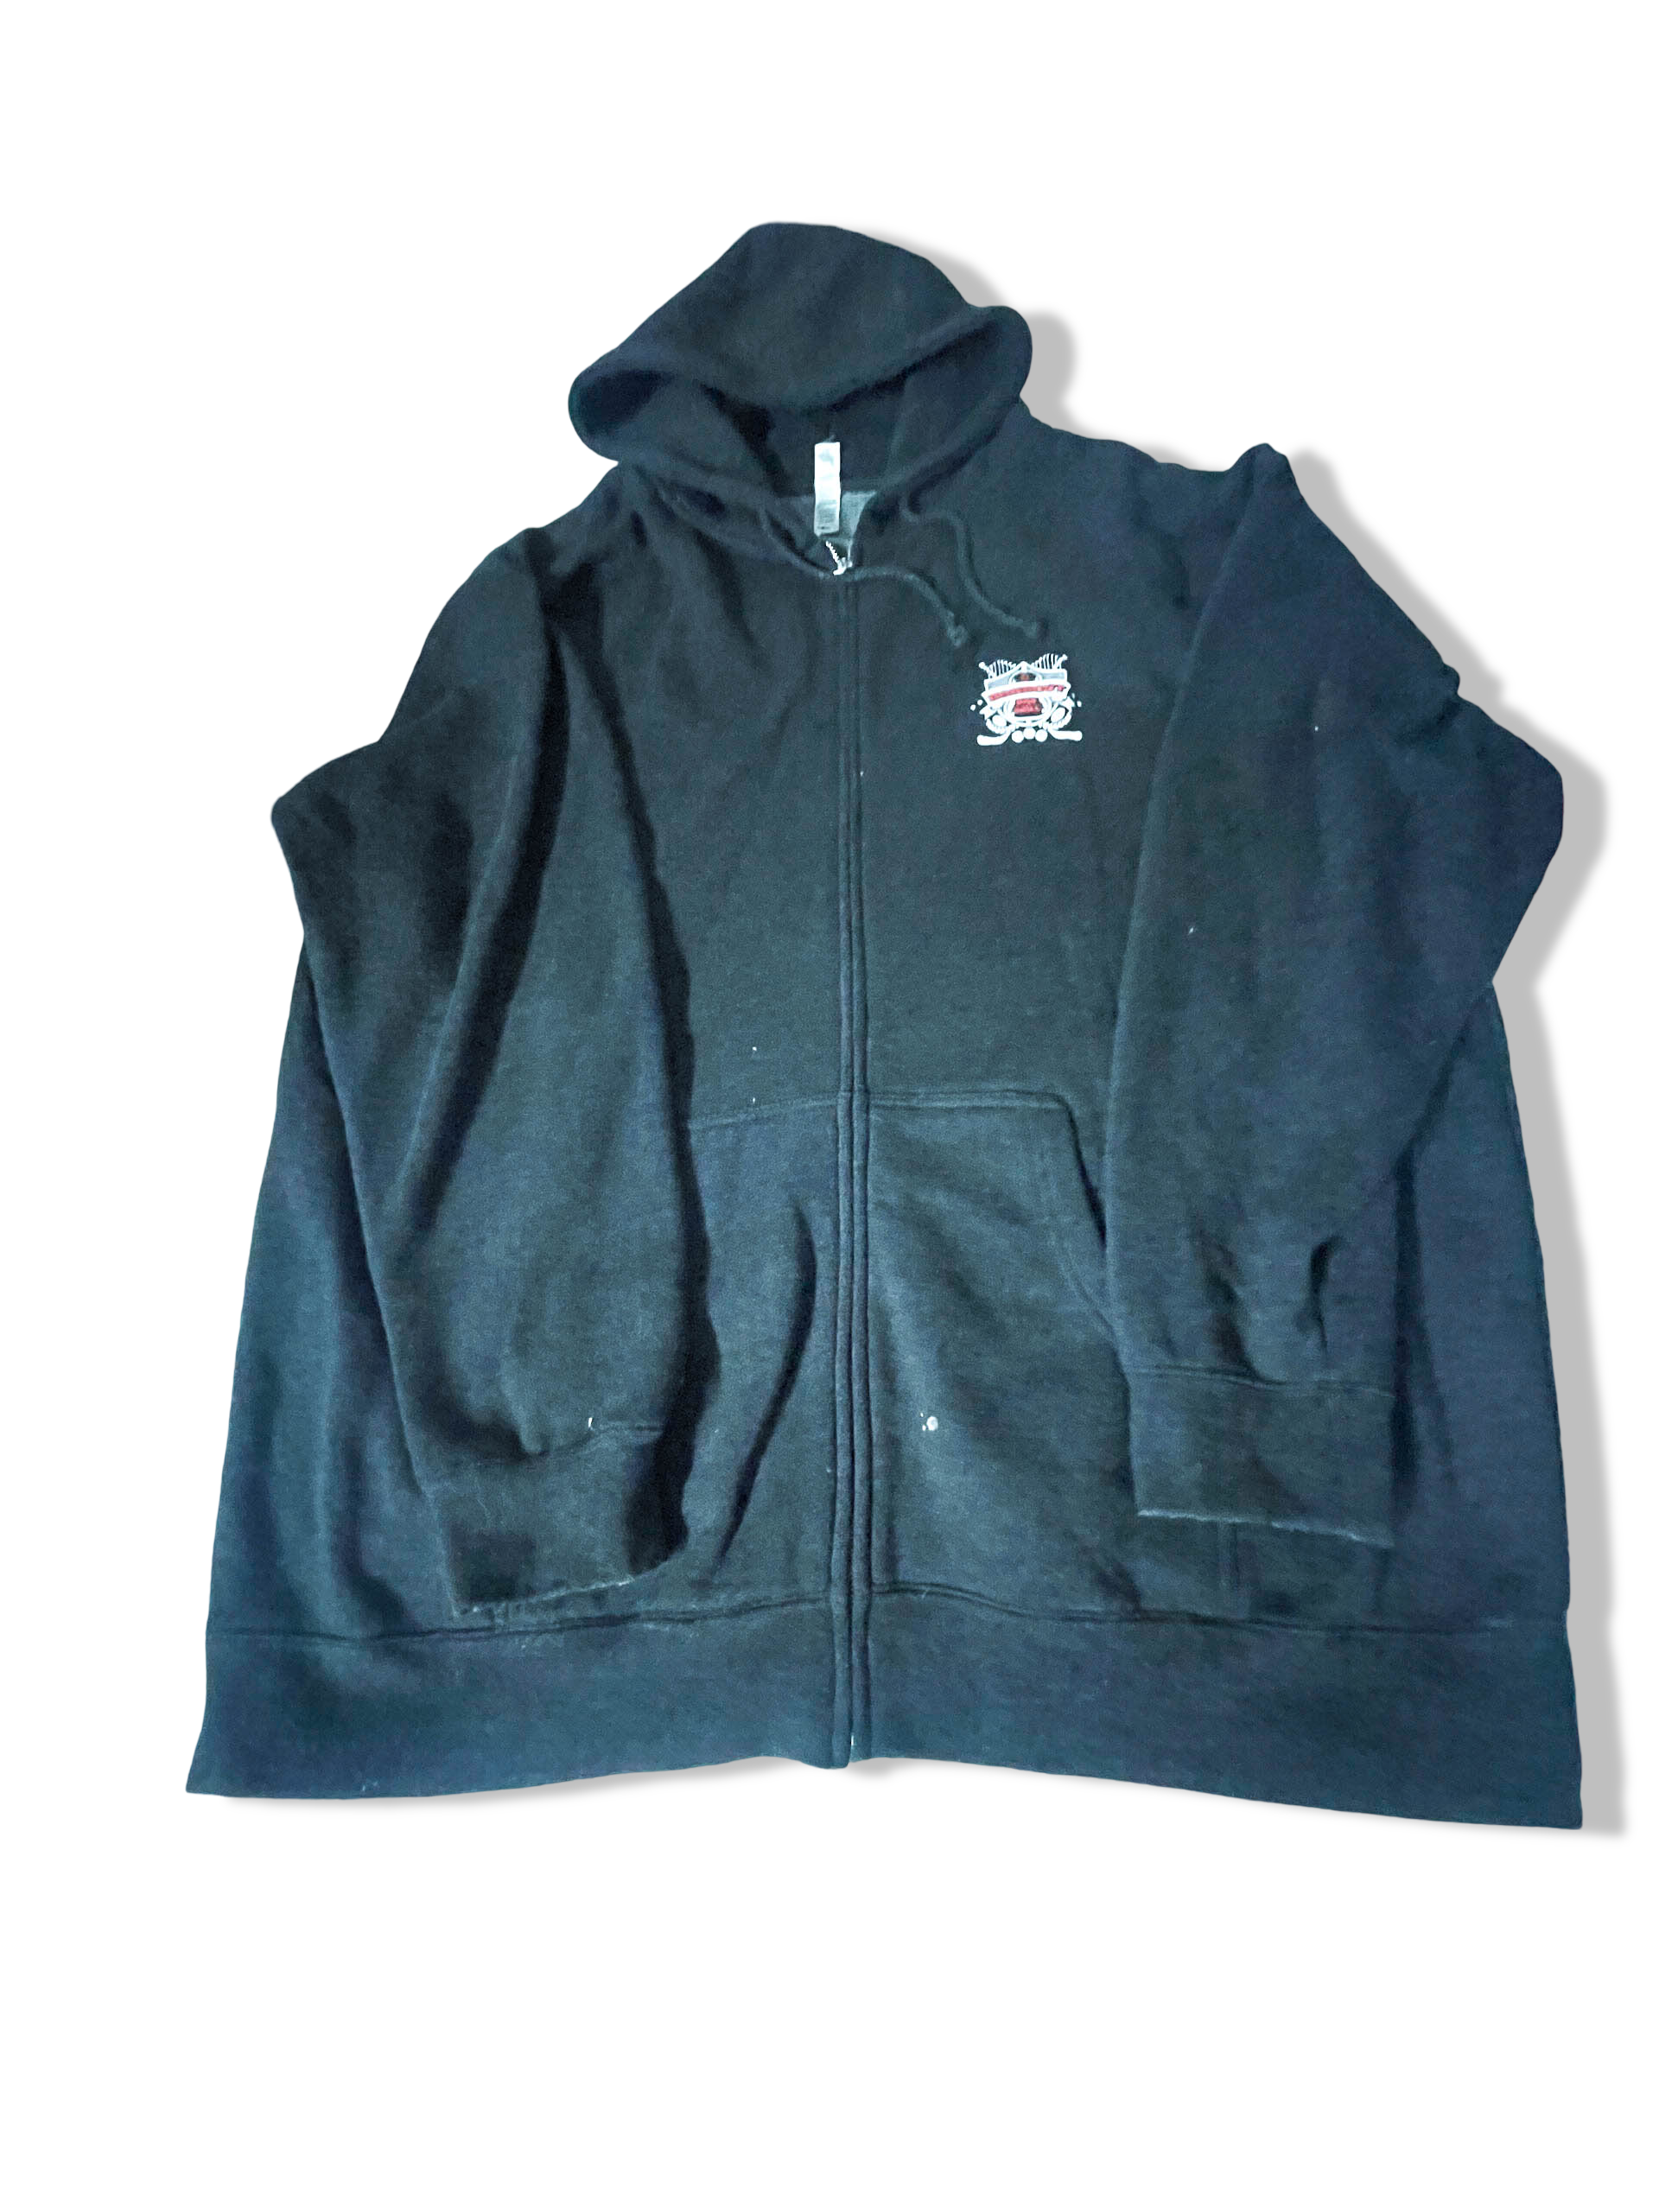 Vintage Independent Men's oversize grey full zip hoodie in XL|L32 W28|SKU 3934